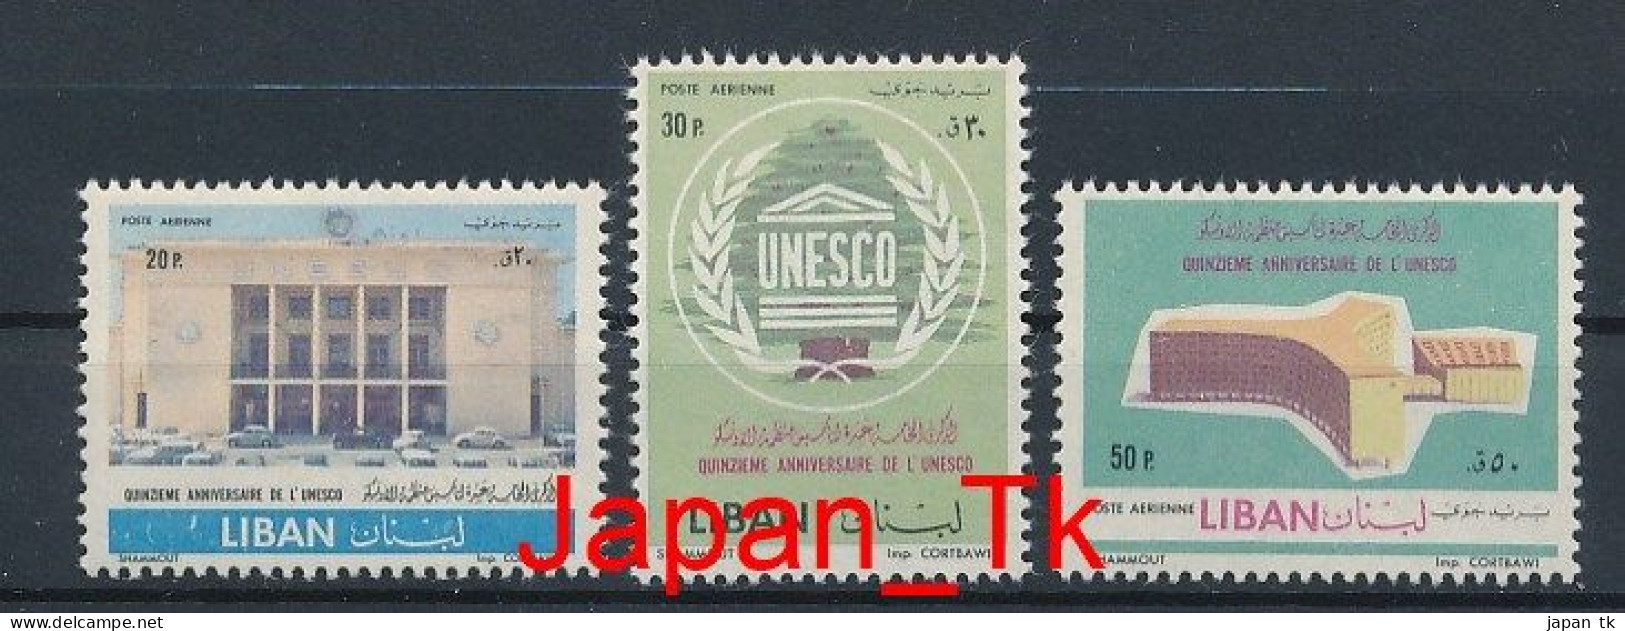 LIBANON Mi. Nr. 750-752 15 Jahre UNESCO - MNH - Lebanon